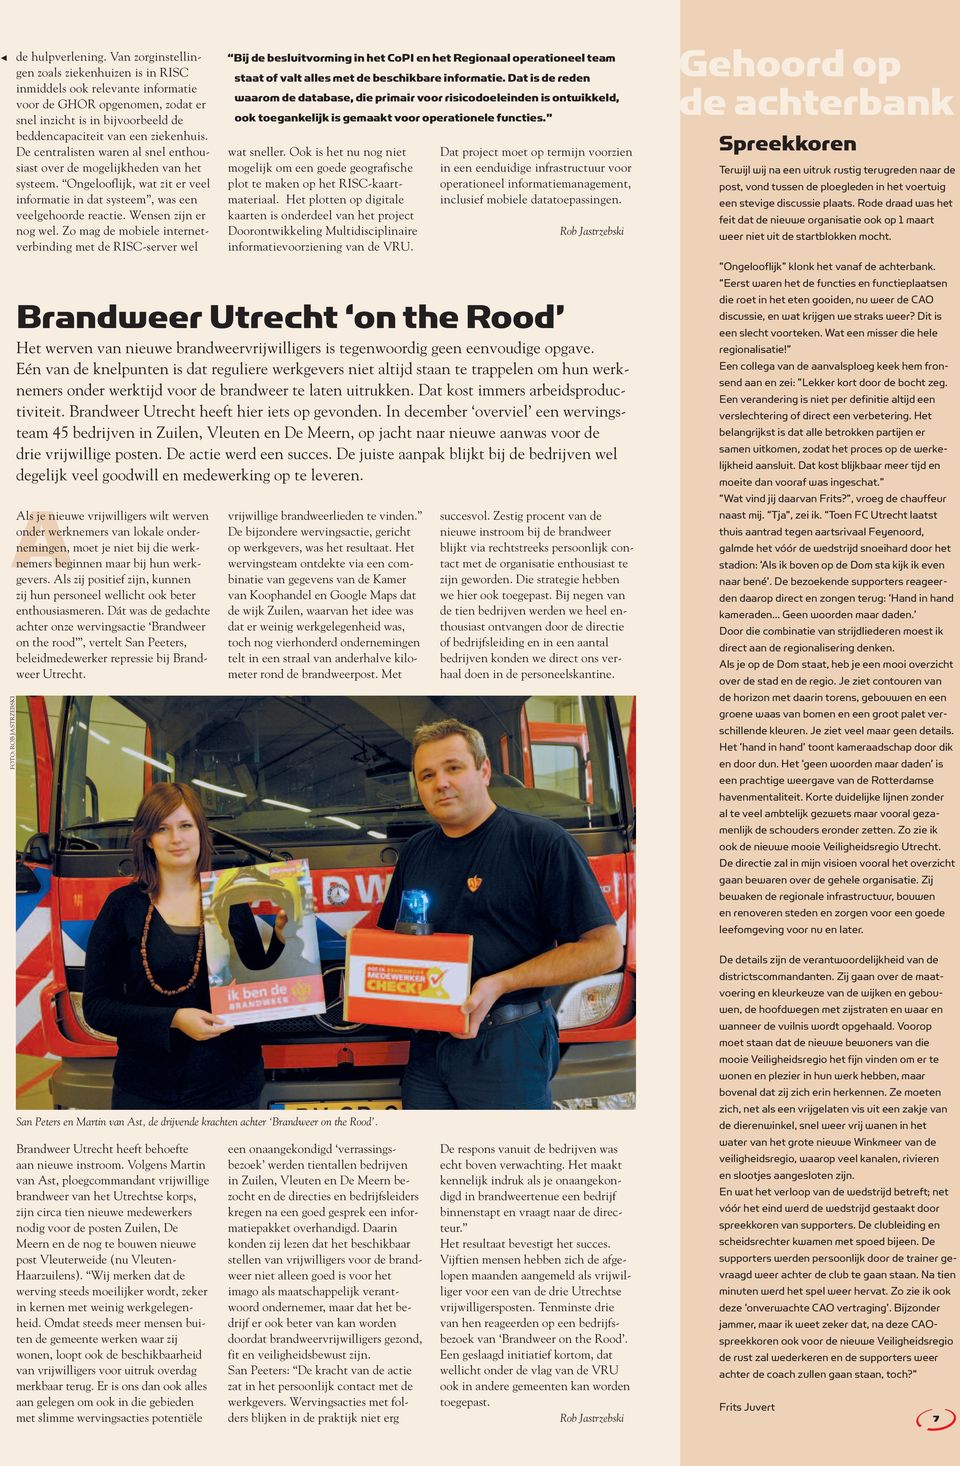 Brandweer Utrecht heeft hier iets op gevonden. In december overviel een wervingsteam 45 bedrijven in Zuilen, Vleuten en De Meern, op jacht naar nieuwe aanwas voor de drie vrijwillige posten.